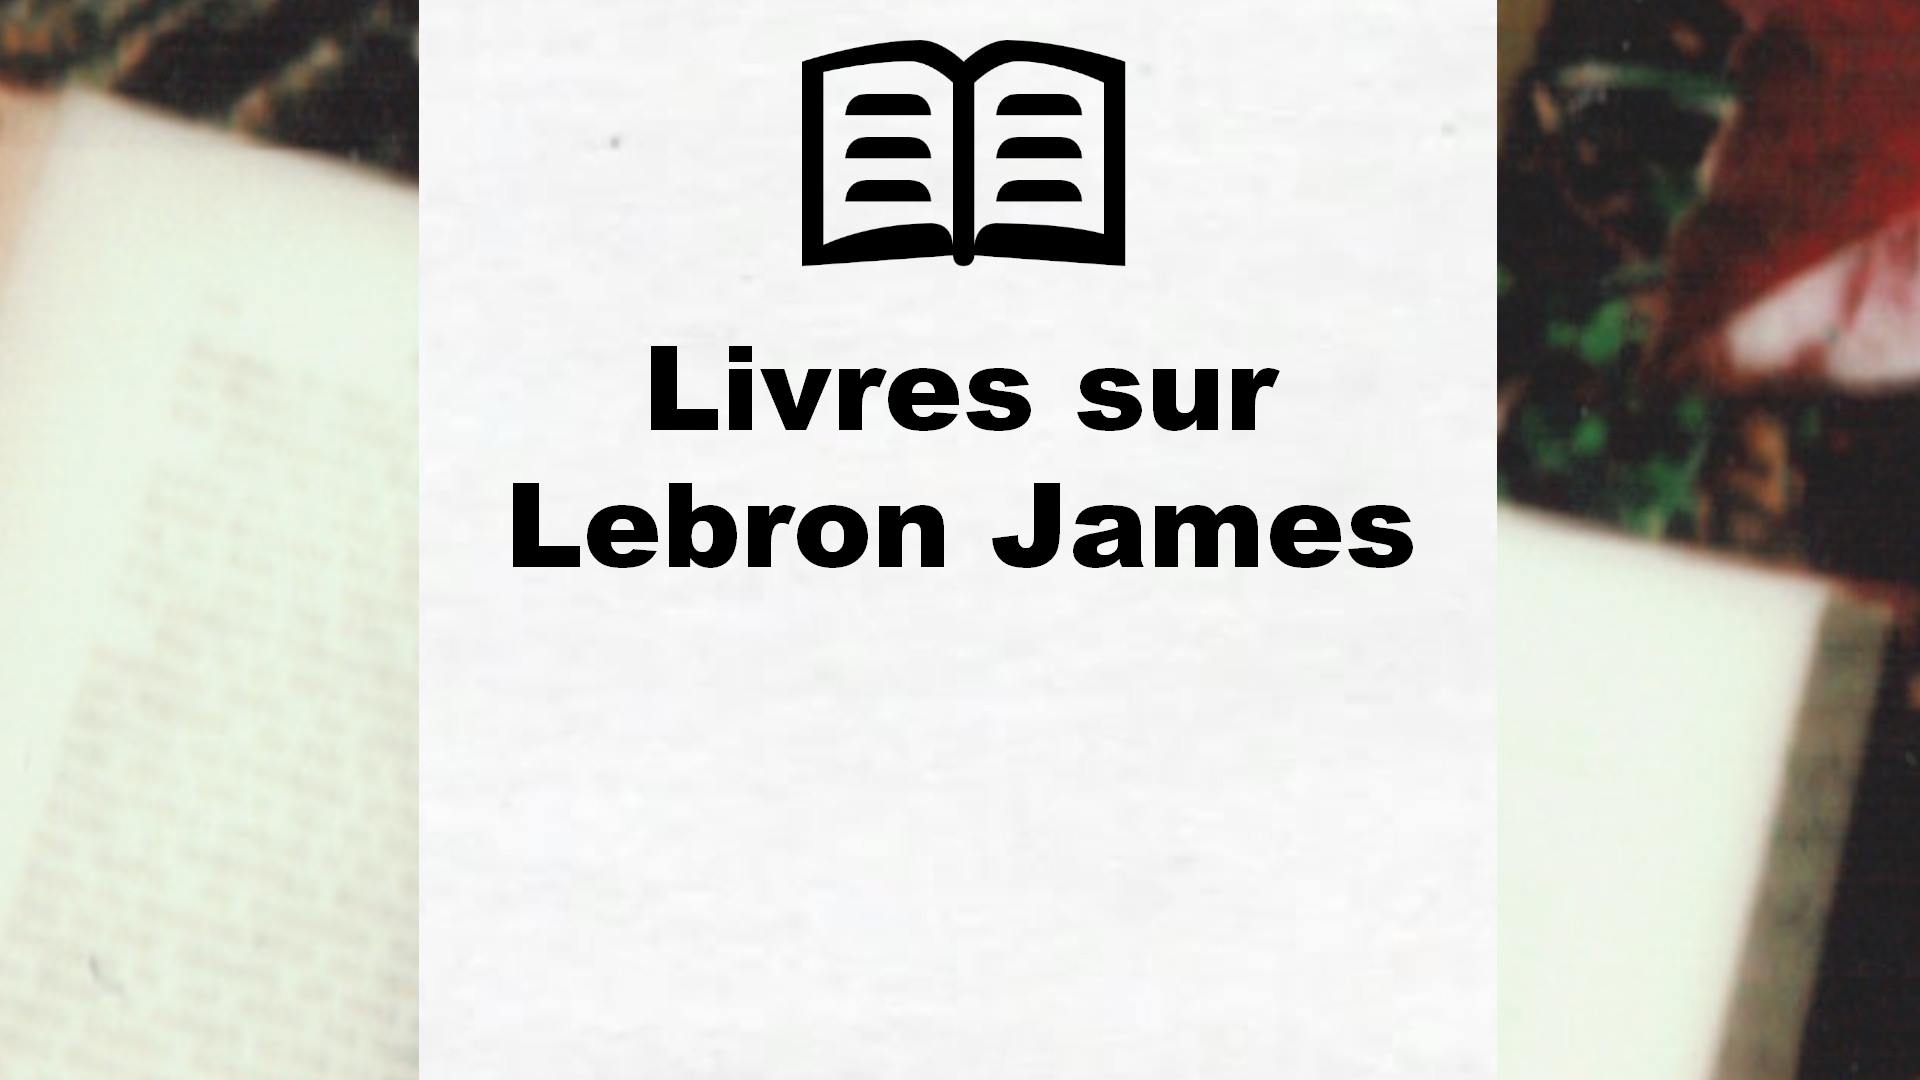 Livres sur Lebron James